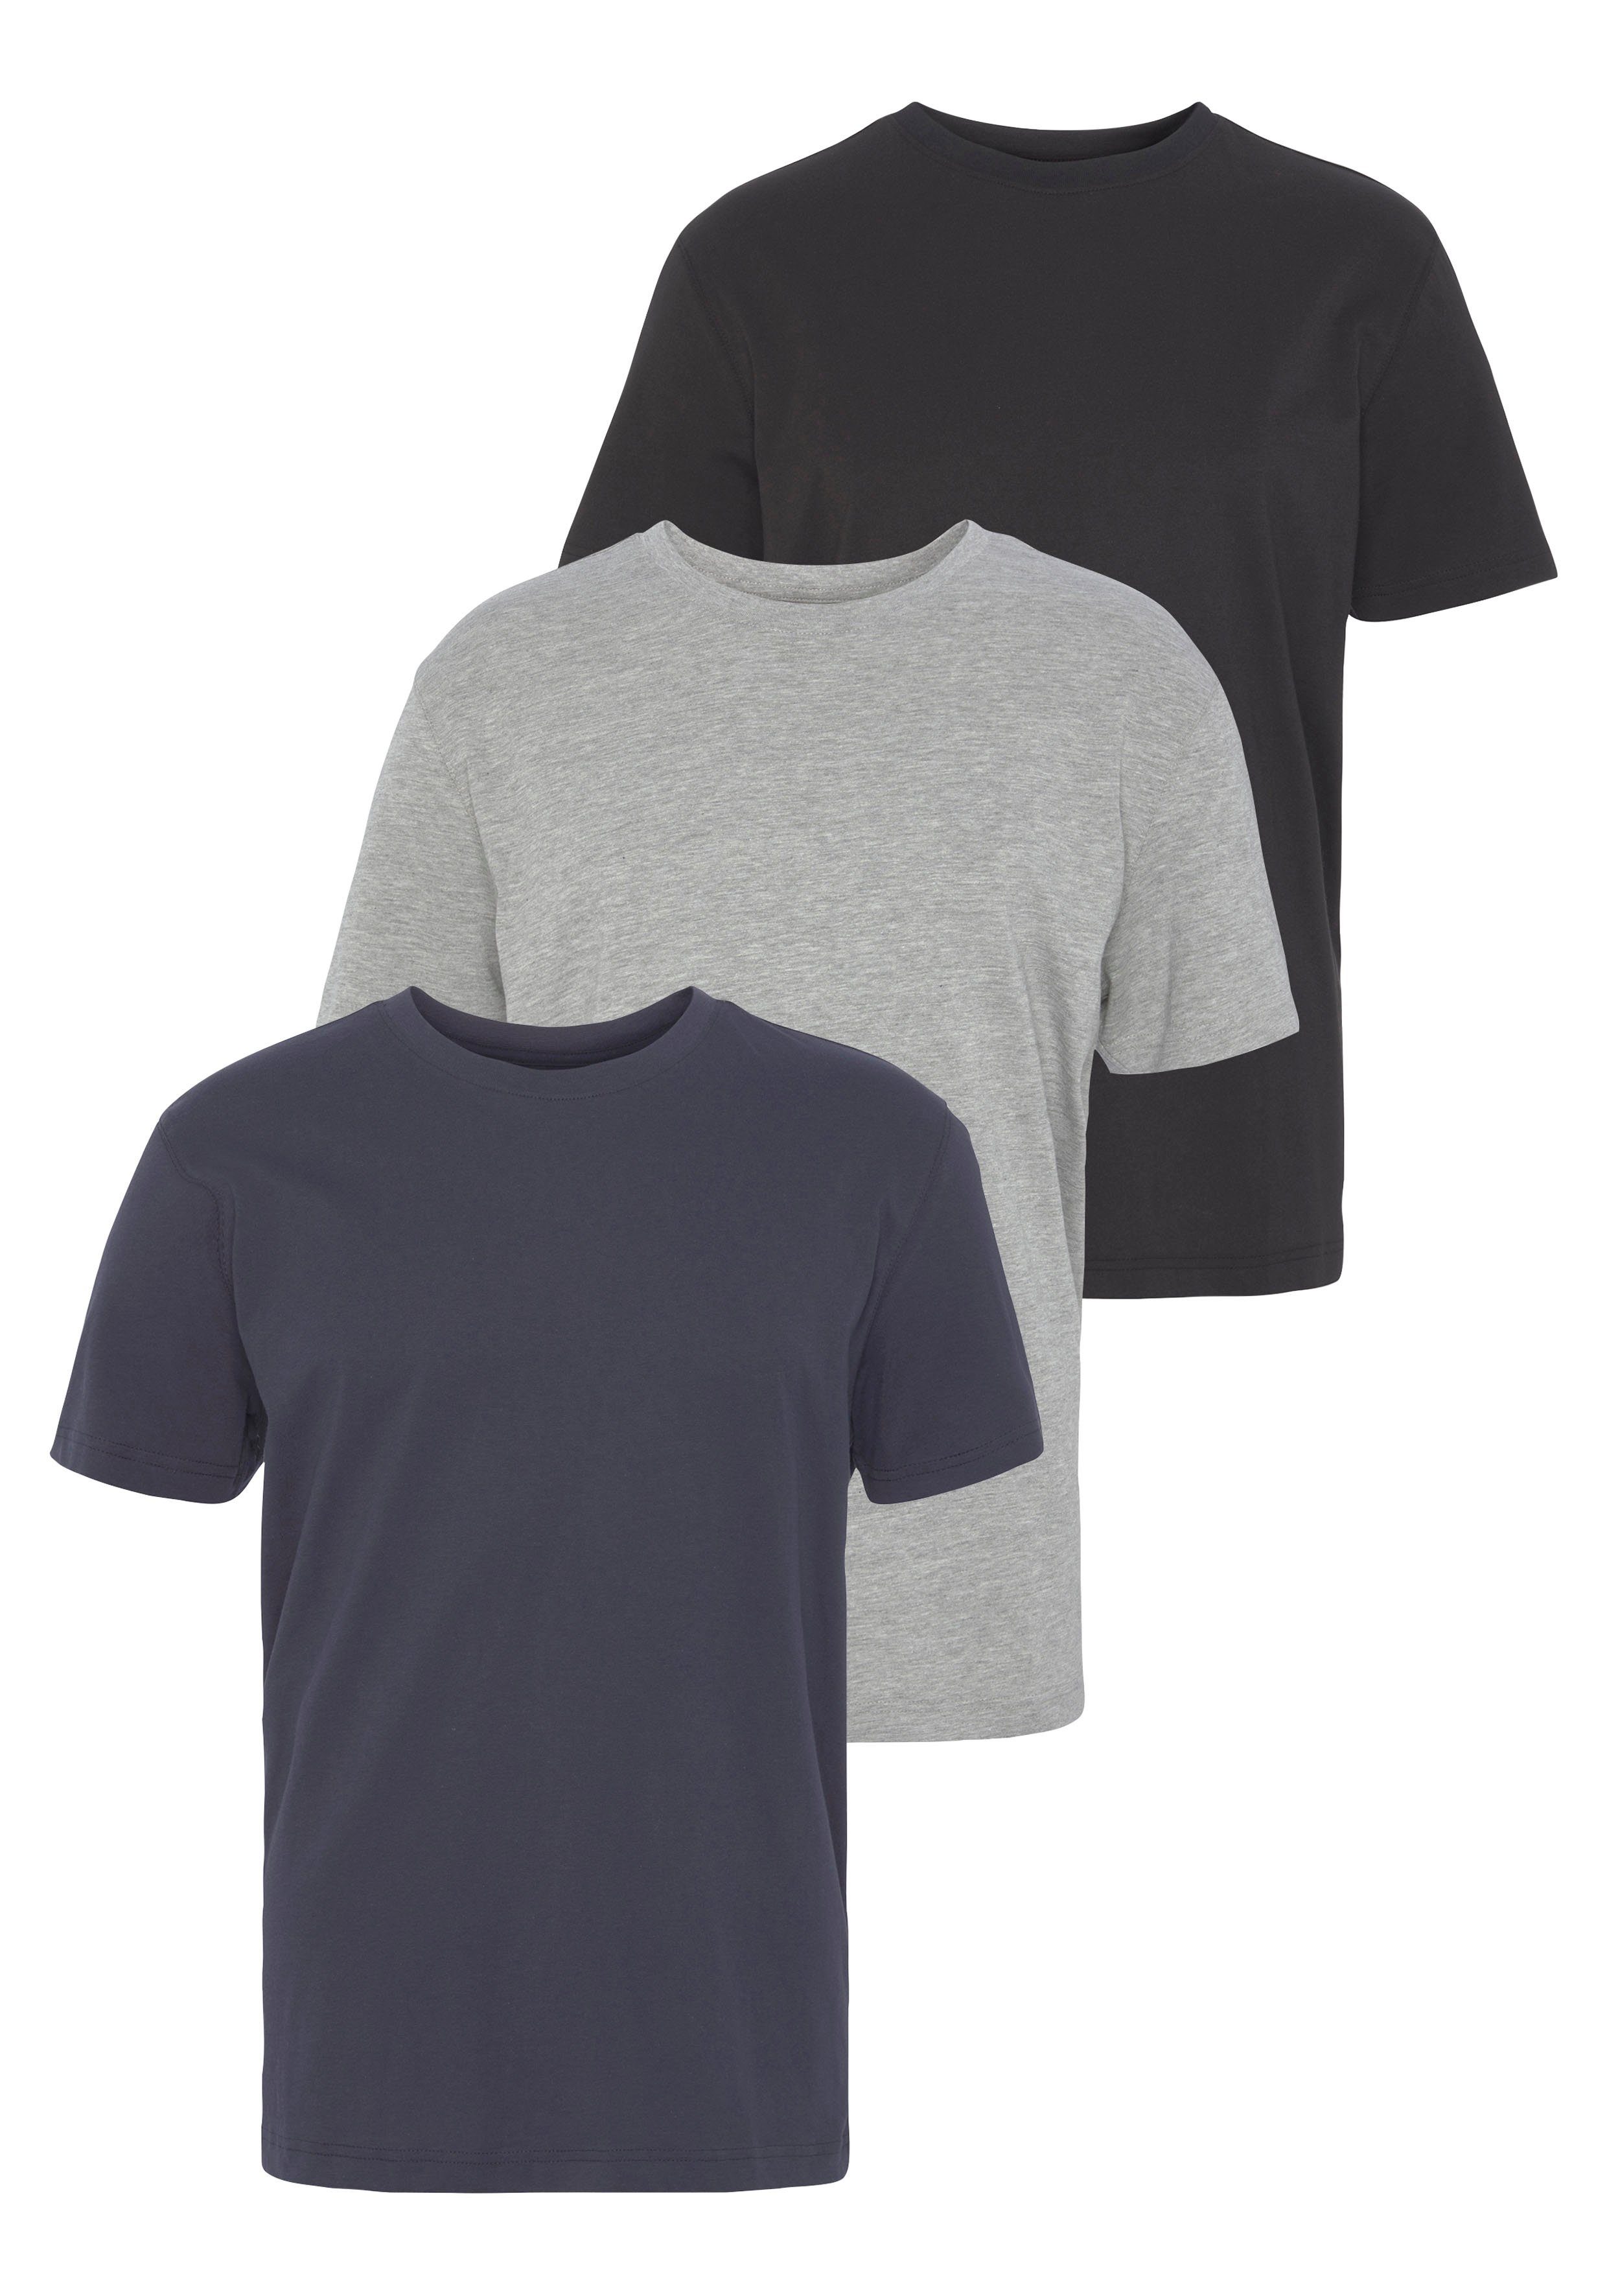 Man's World T-Shirt (Packung, 3-tlg., 3er-Pack) perfekt als Unterzieh- T-shirt grau-marine-schwarz